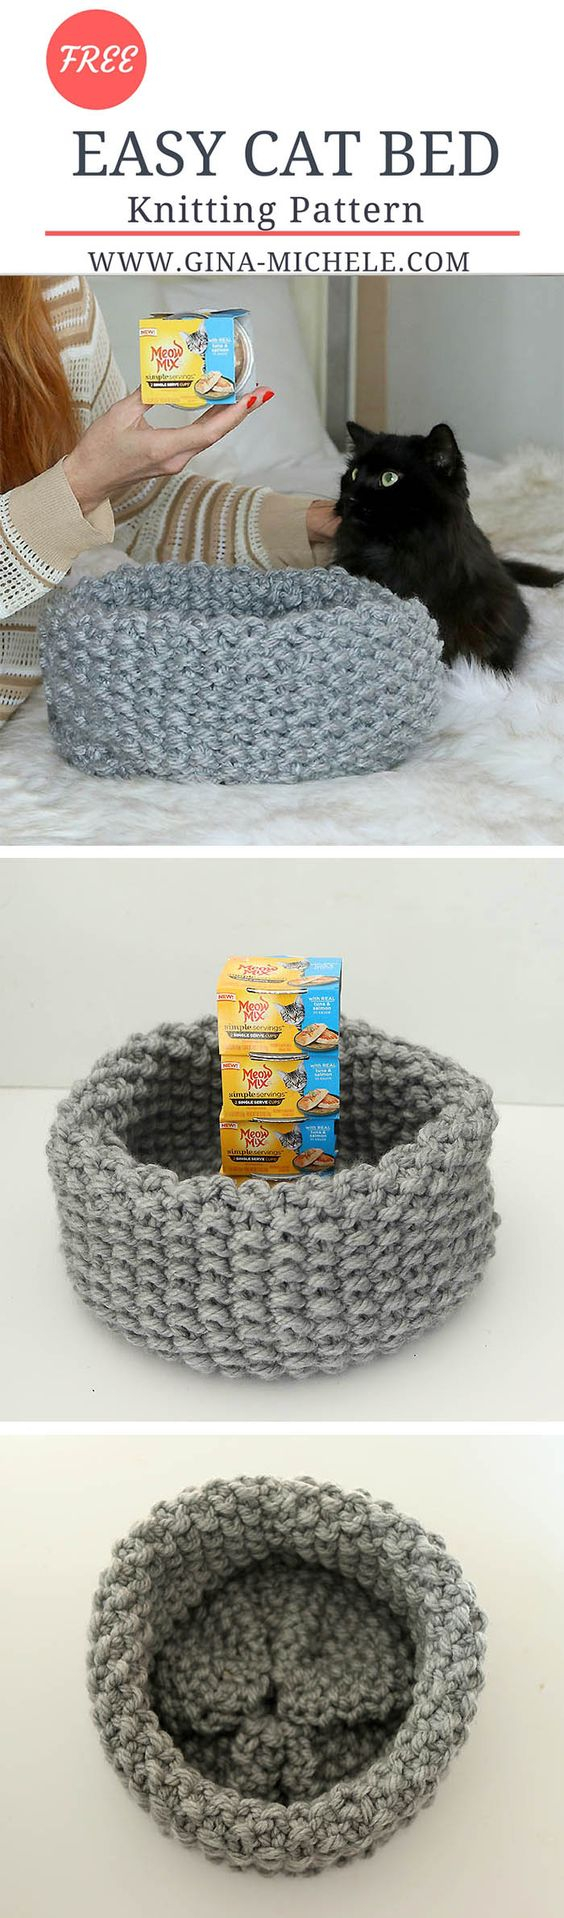 Free Crochet Cat Bed Pattern 15 Crochet Pet Bed Ideas